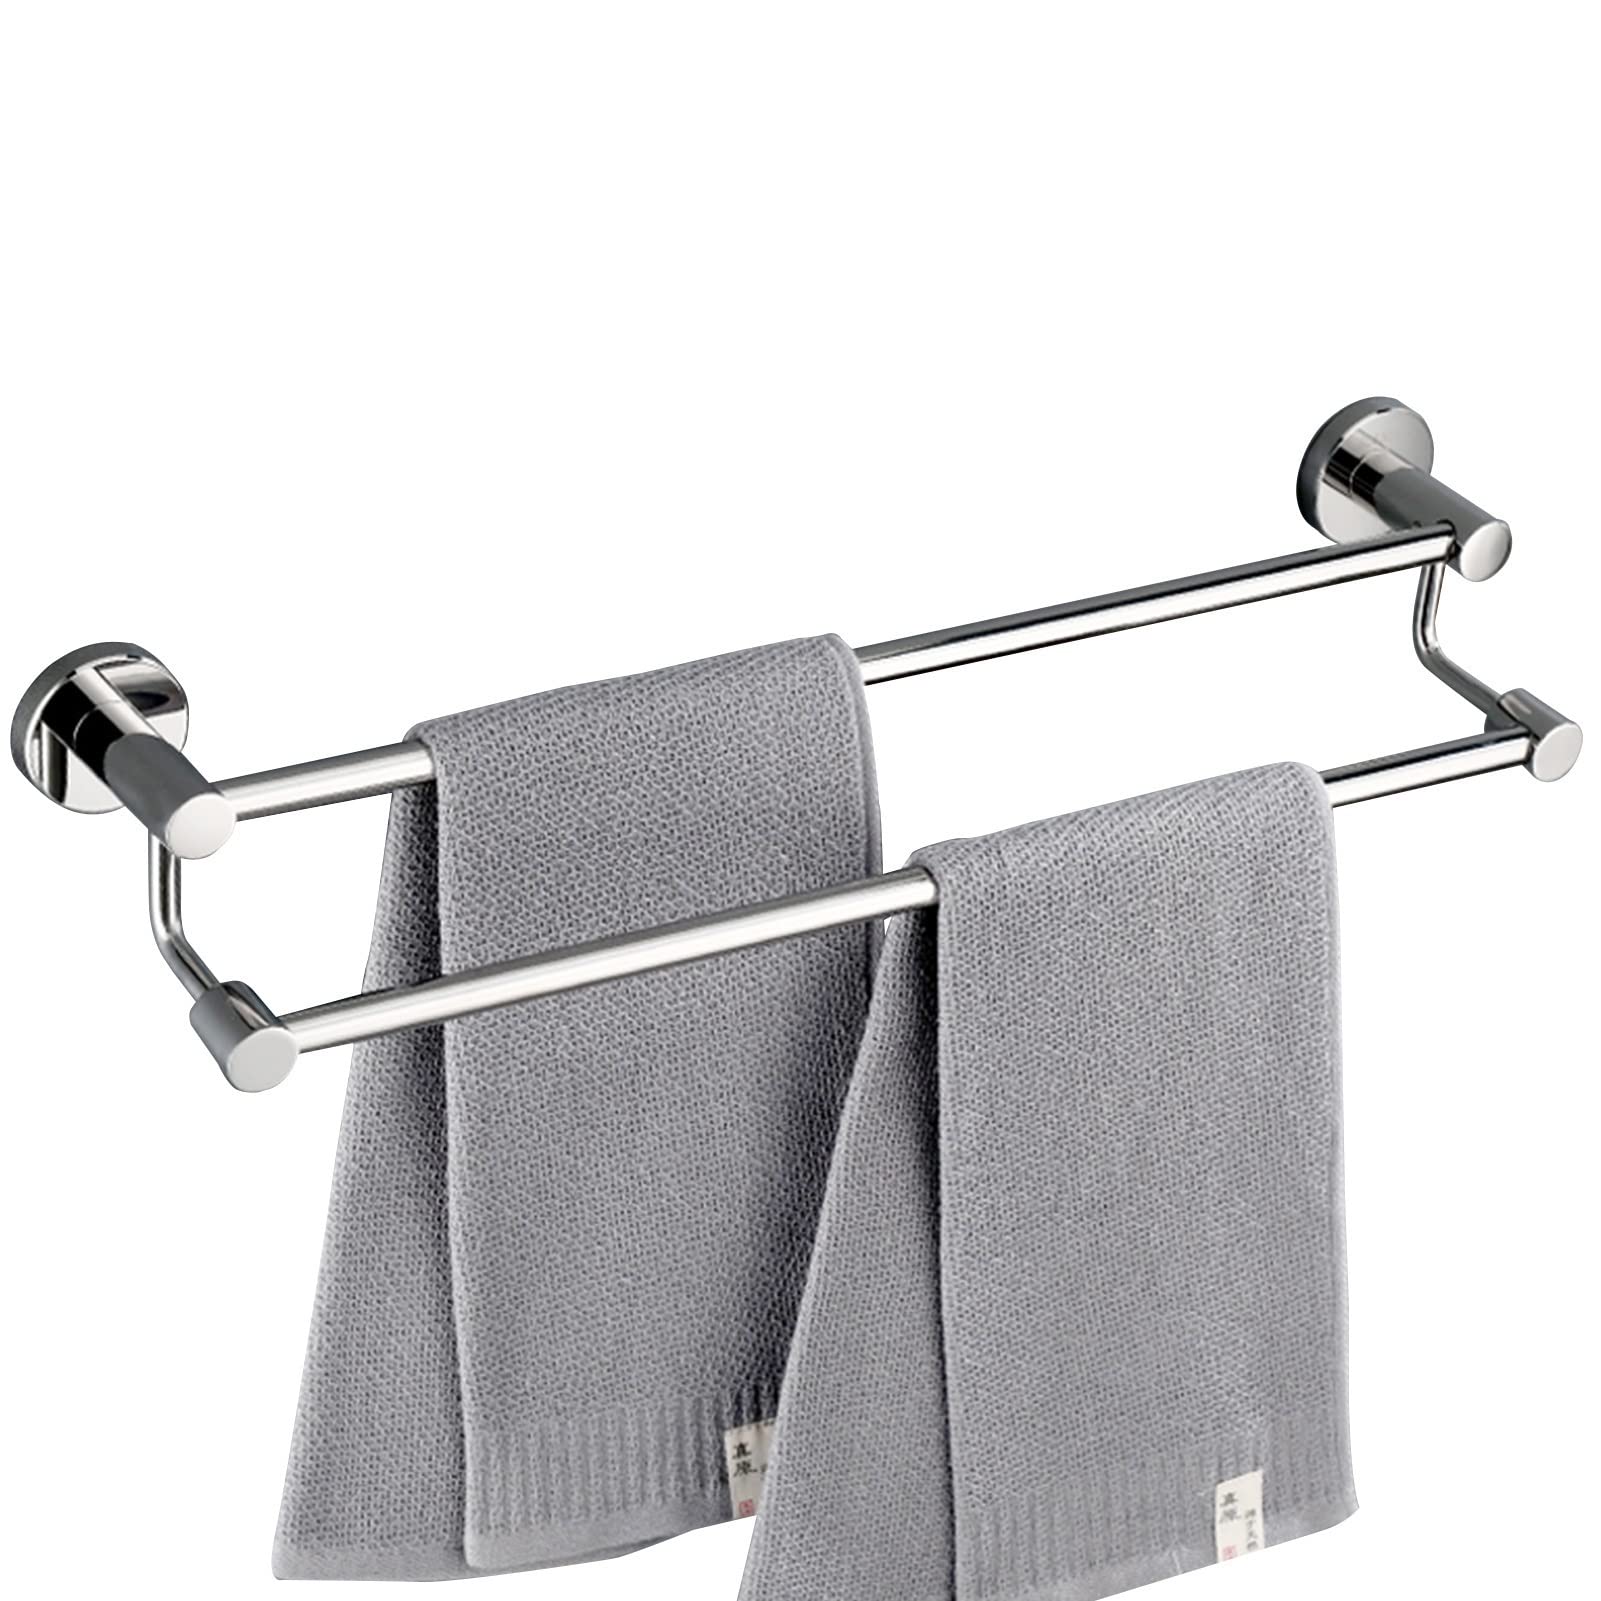 Doppelstangen-Badetuchstange, 304 Edelstahl-Handtuchstange, gebürsteter Silber-Finish-Handtuchhalter, an der Wand befestigte Badetuchstange für Badezimmer und Küche (Size : 120cm)